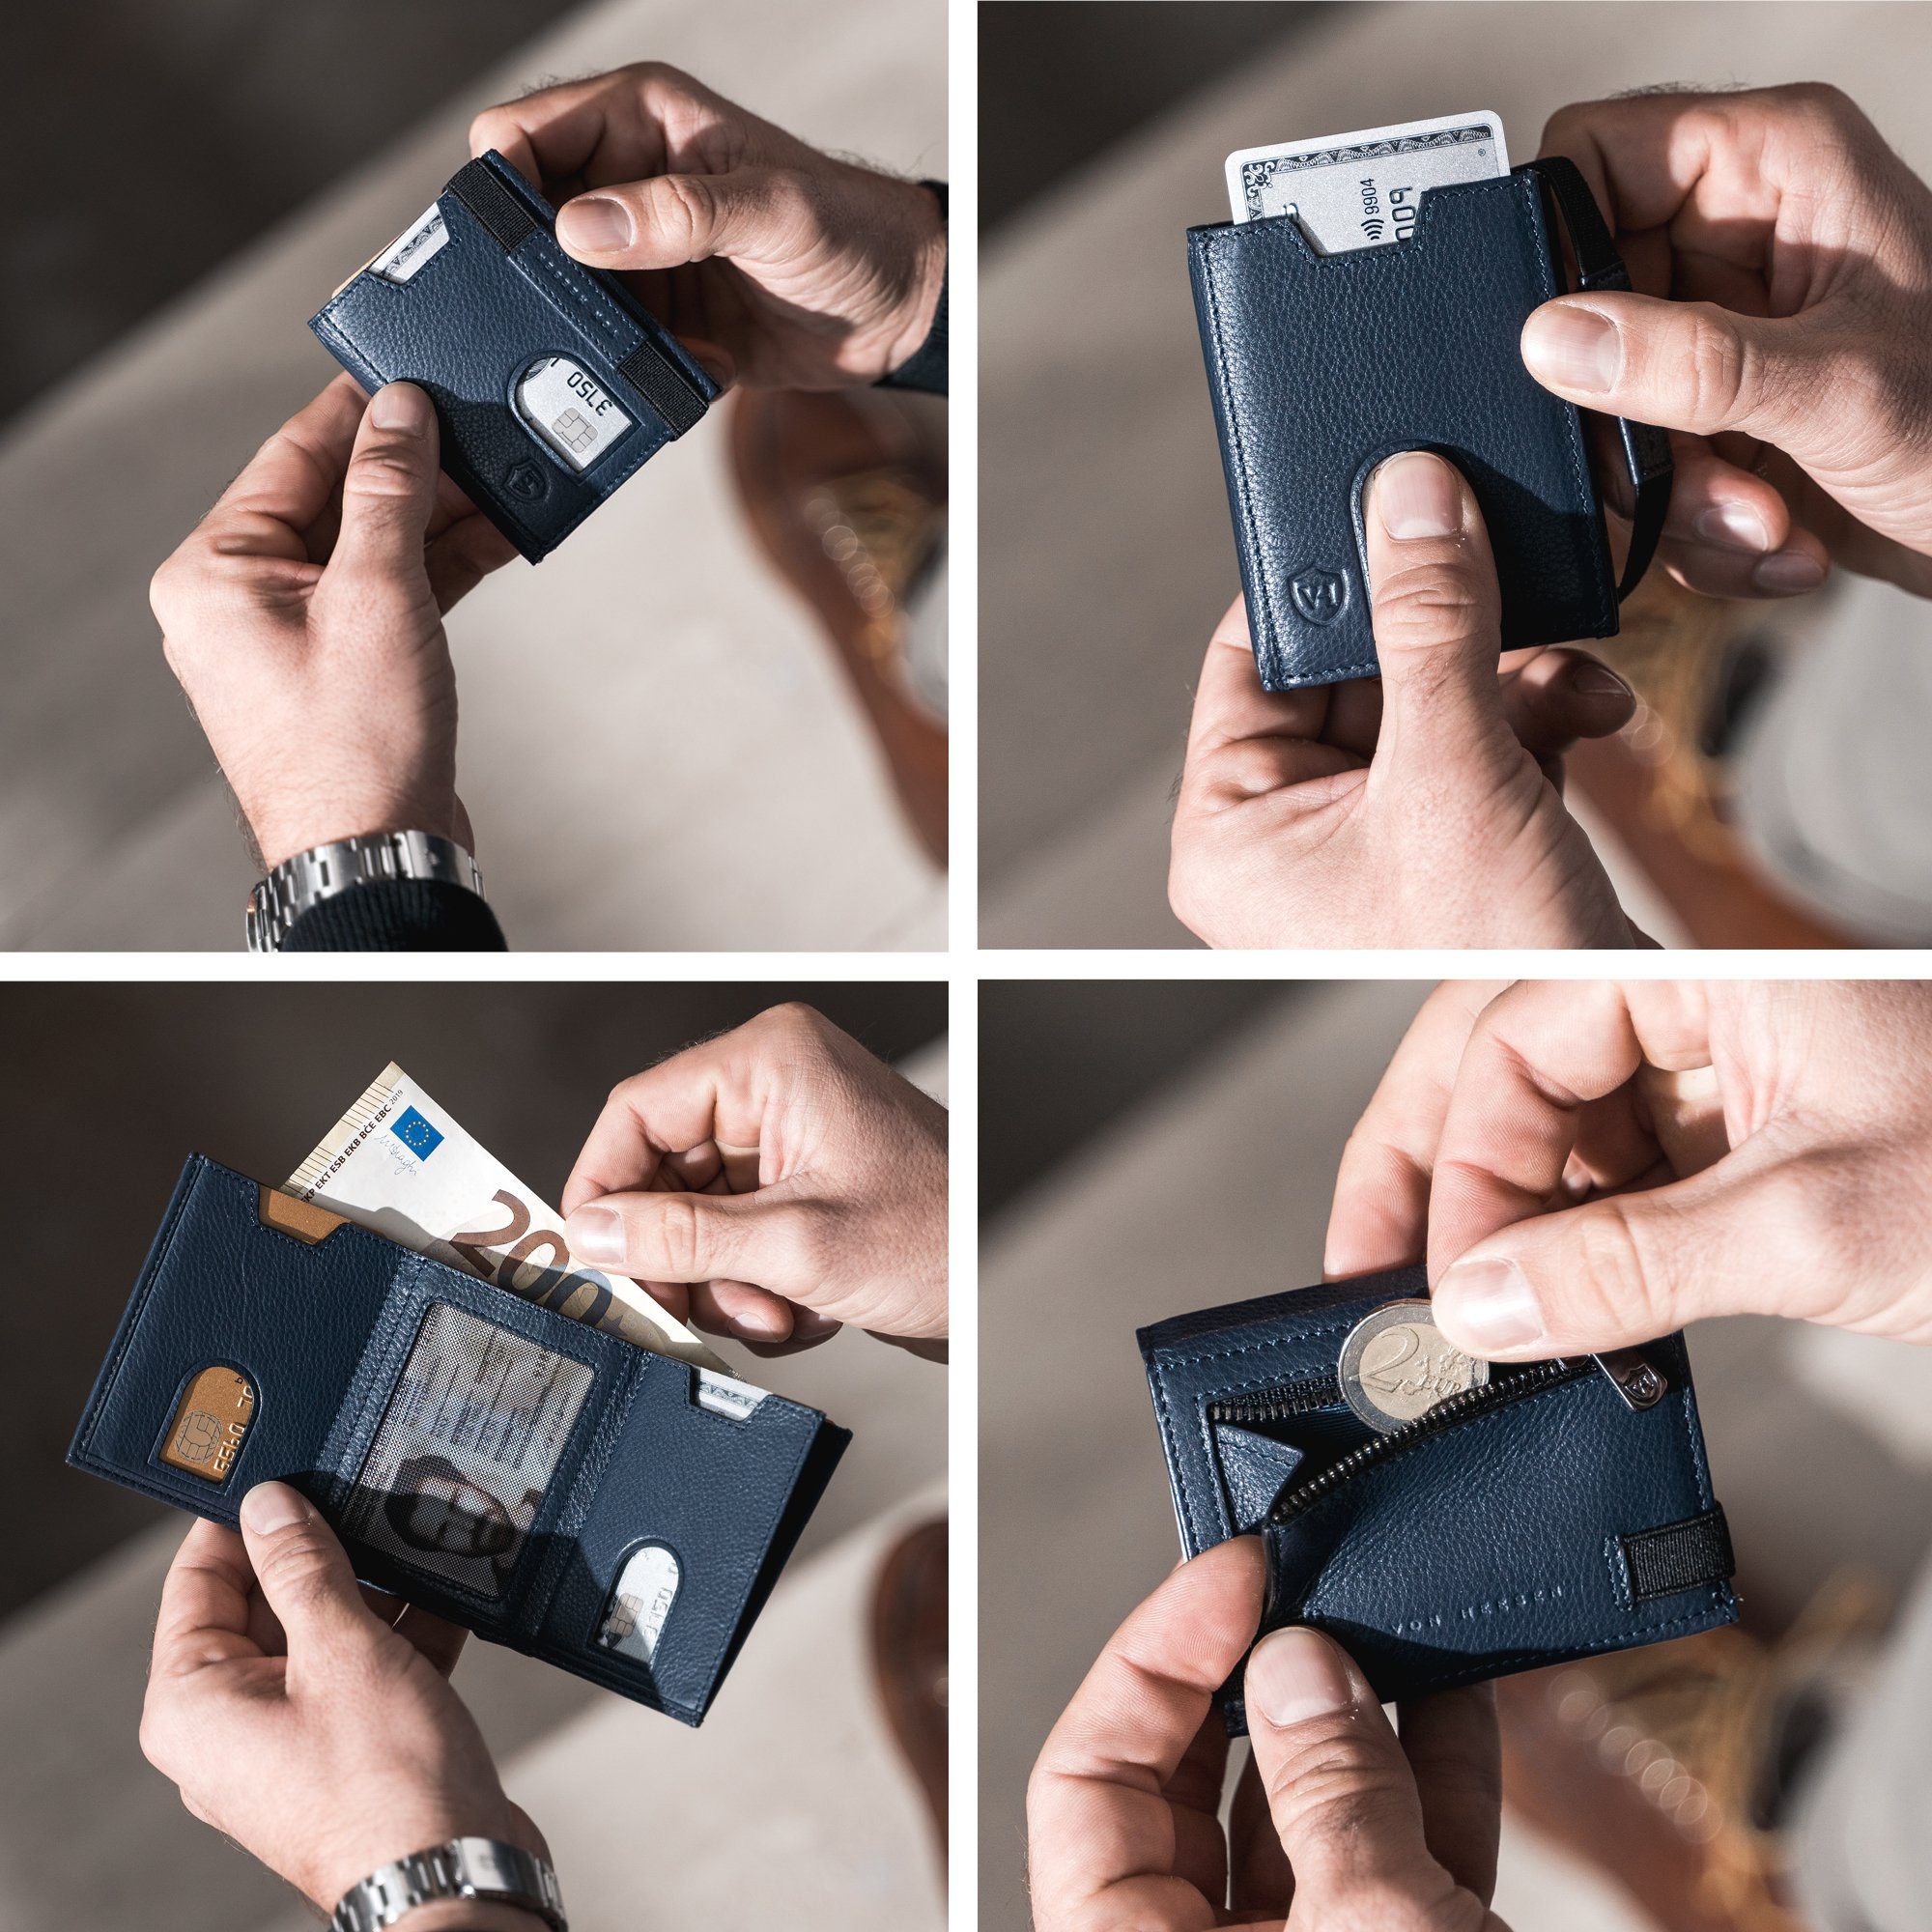 VON HEESEN Geldbörse Whizz Wallet Geschenkbox Wallet mit 5 Blau & RFID-Schutz inkl. Portemonnaie Geldbeutel Slim Mini-Münzfach, Kartenfächer &